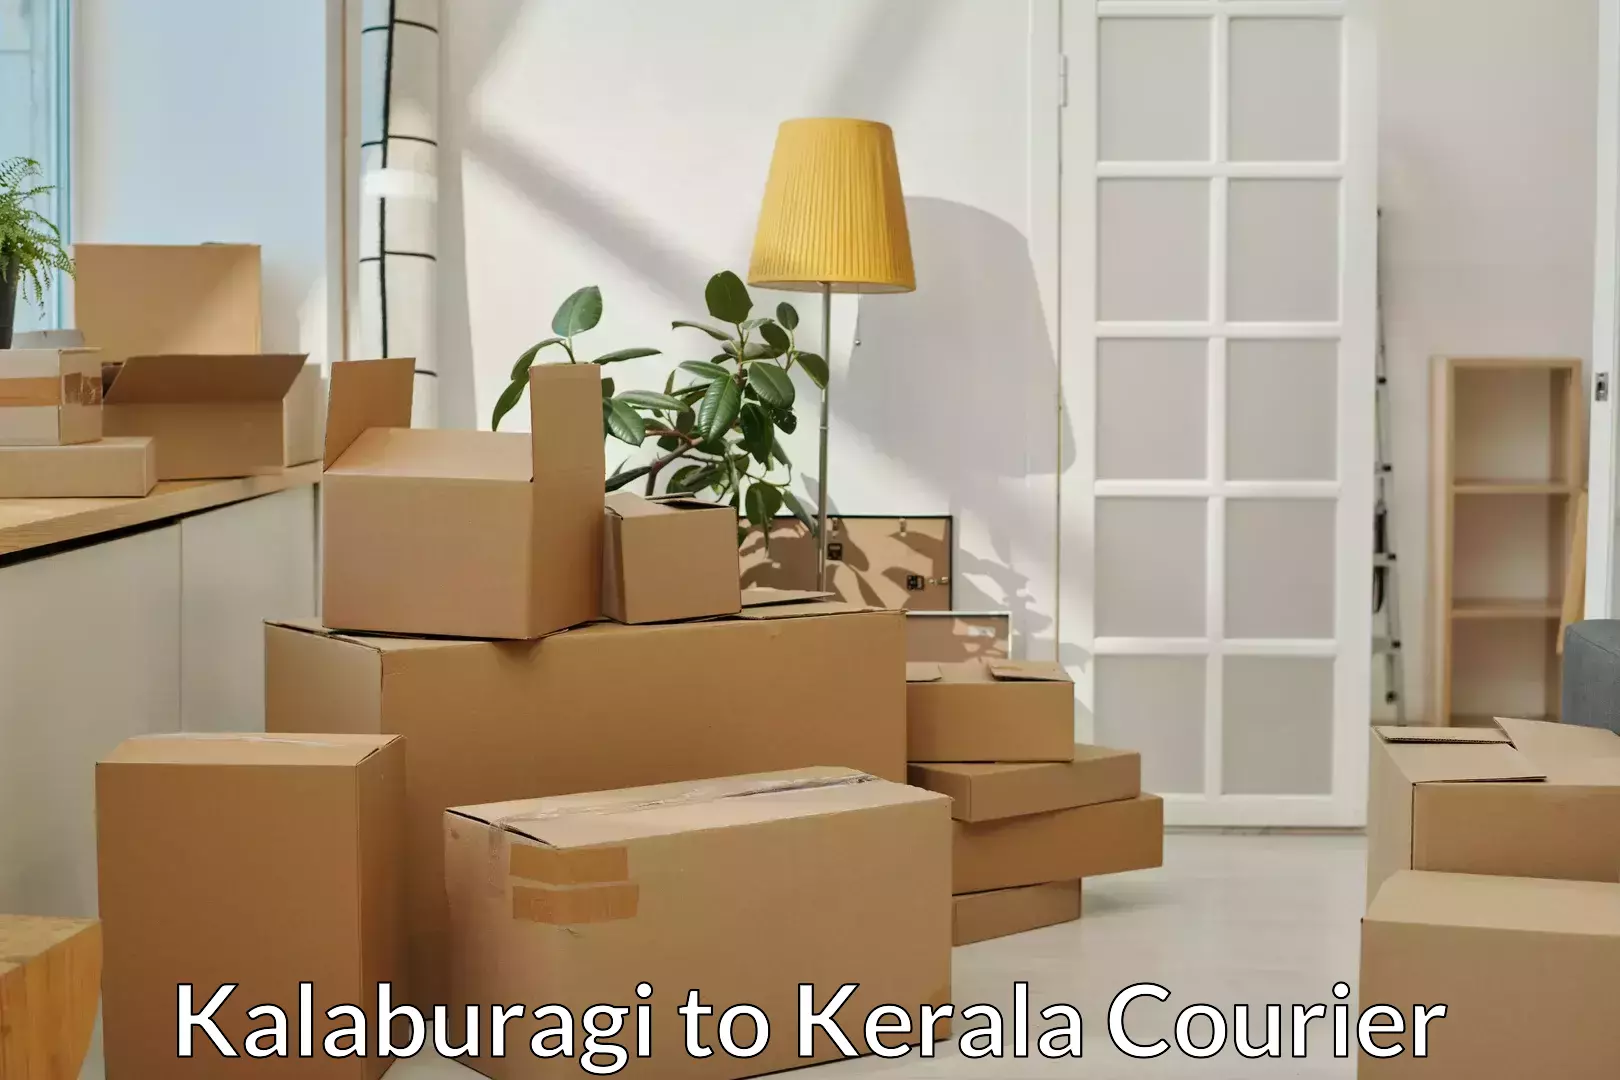 Trusted furniture movers Kalaburagi to Kerala